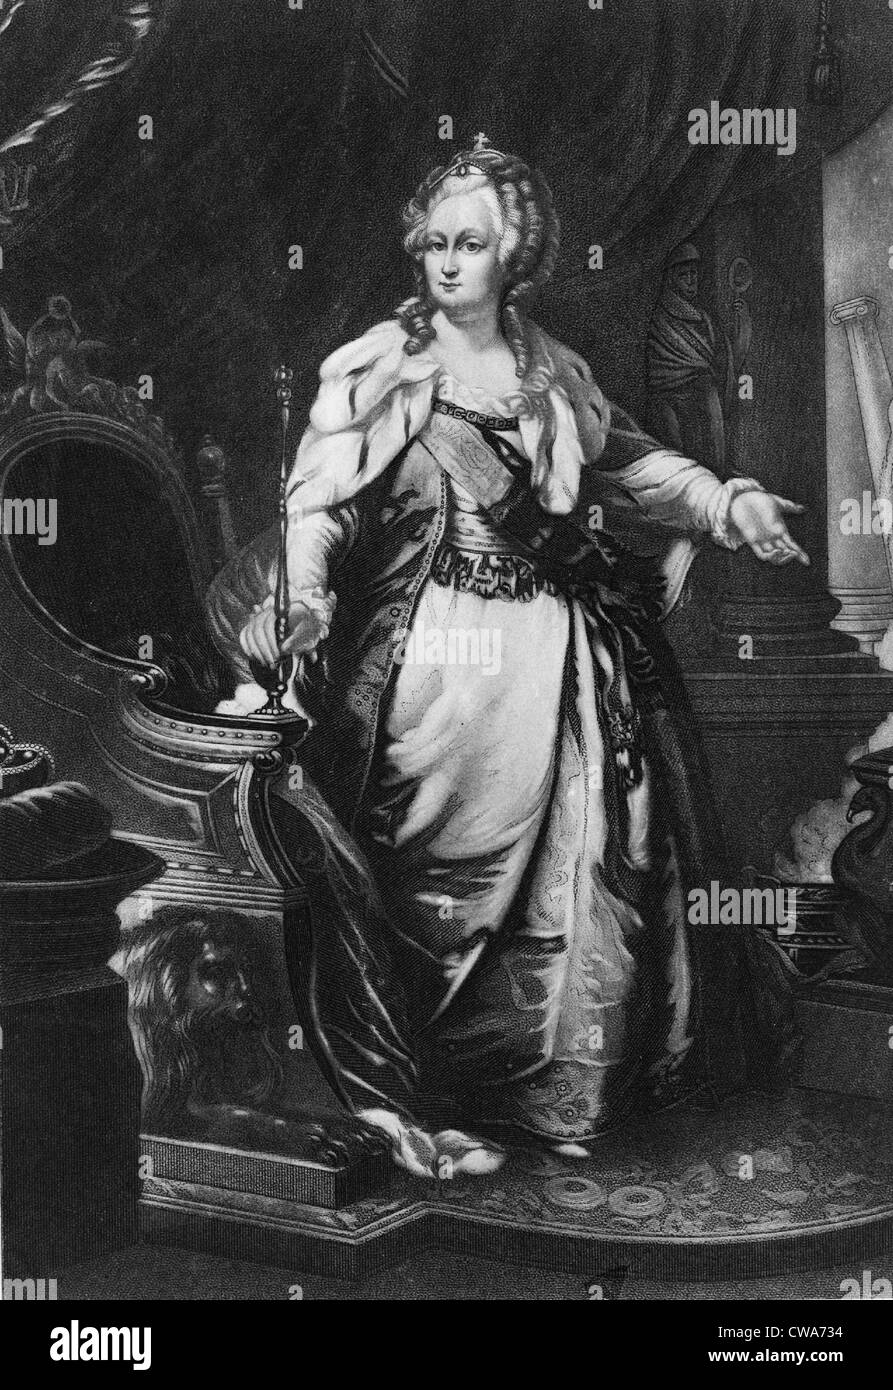 Catherine II, impératrice de Russie, (1729-1796) portrait en pied. Gravure du xixe siècle à partir de la 18e siècle la peinture. Banque D'Images